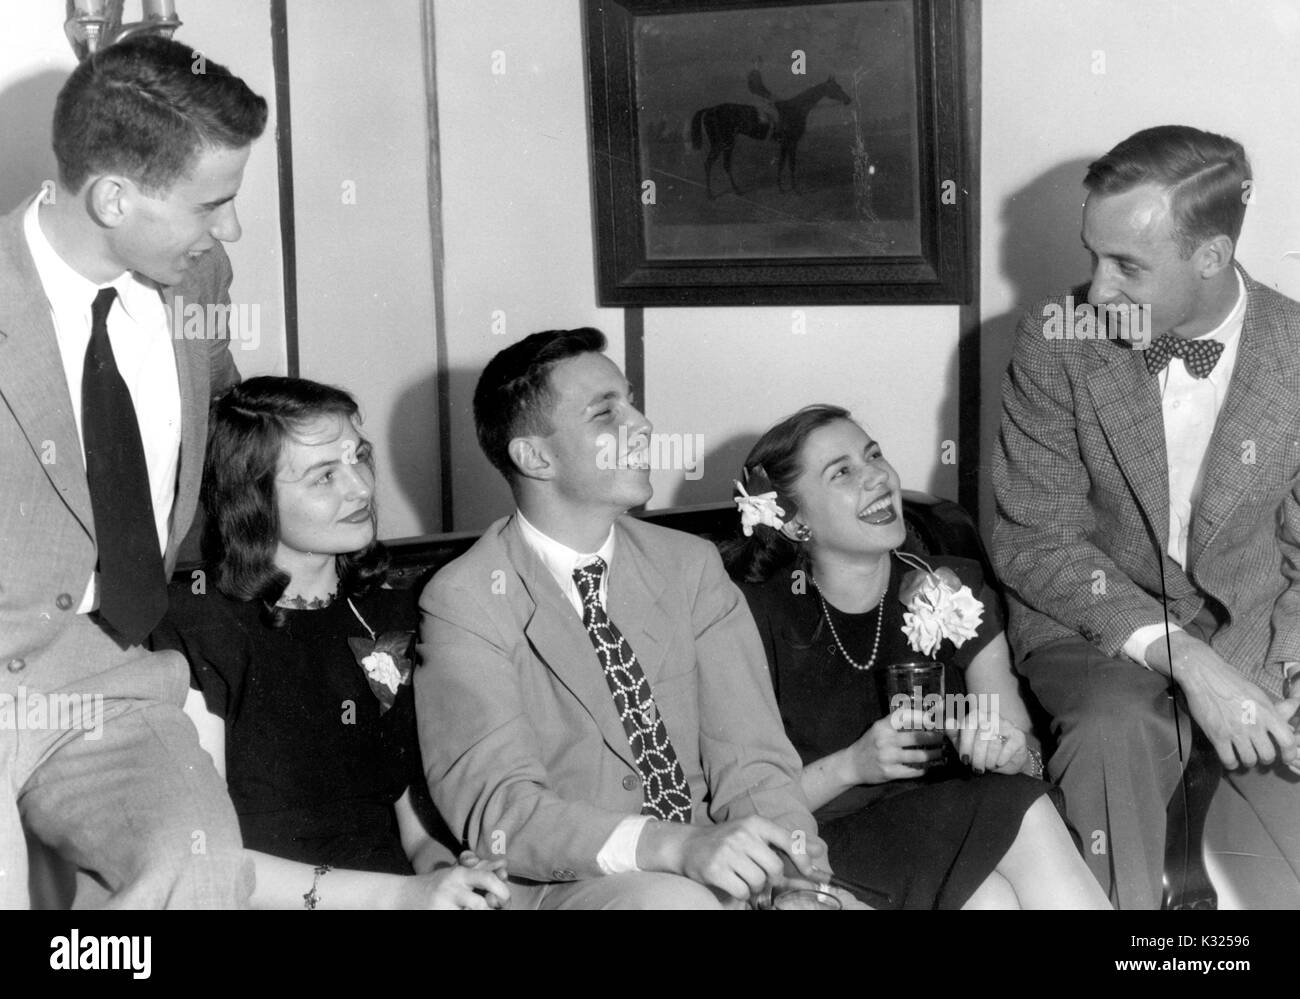 Lors d'une fête organisée par la fraternité Phi Delta à l'Université Johns Hopkins, les frères lounge sur un canapé dans un groupe, portant des costumes à côté de leurs copines dans les robes et les corsages, tout le monde de sourire et de boire des boissons à partir de verres, dans une fraternité house hors-campus, Baltimore, Maryland, 1947. Banque D'Images